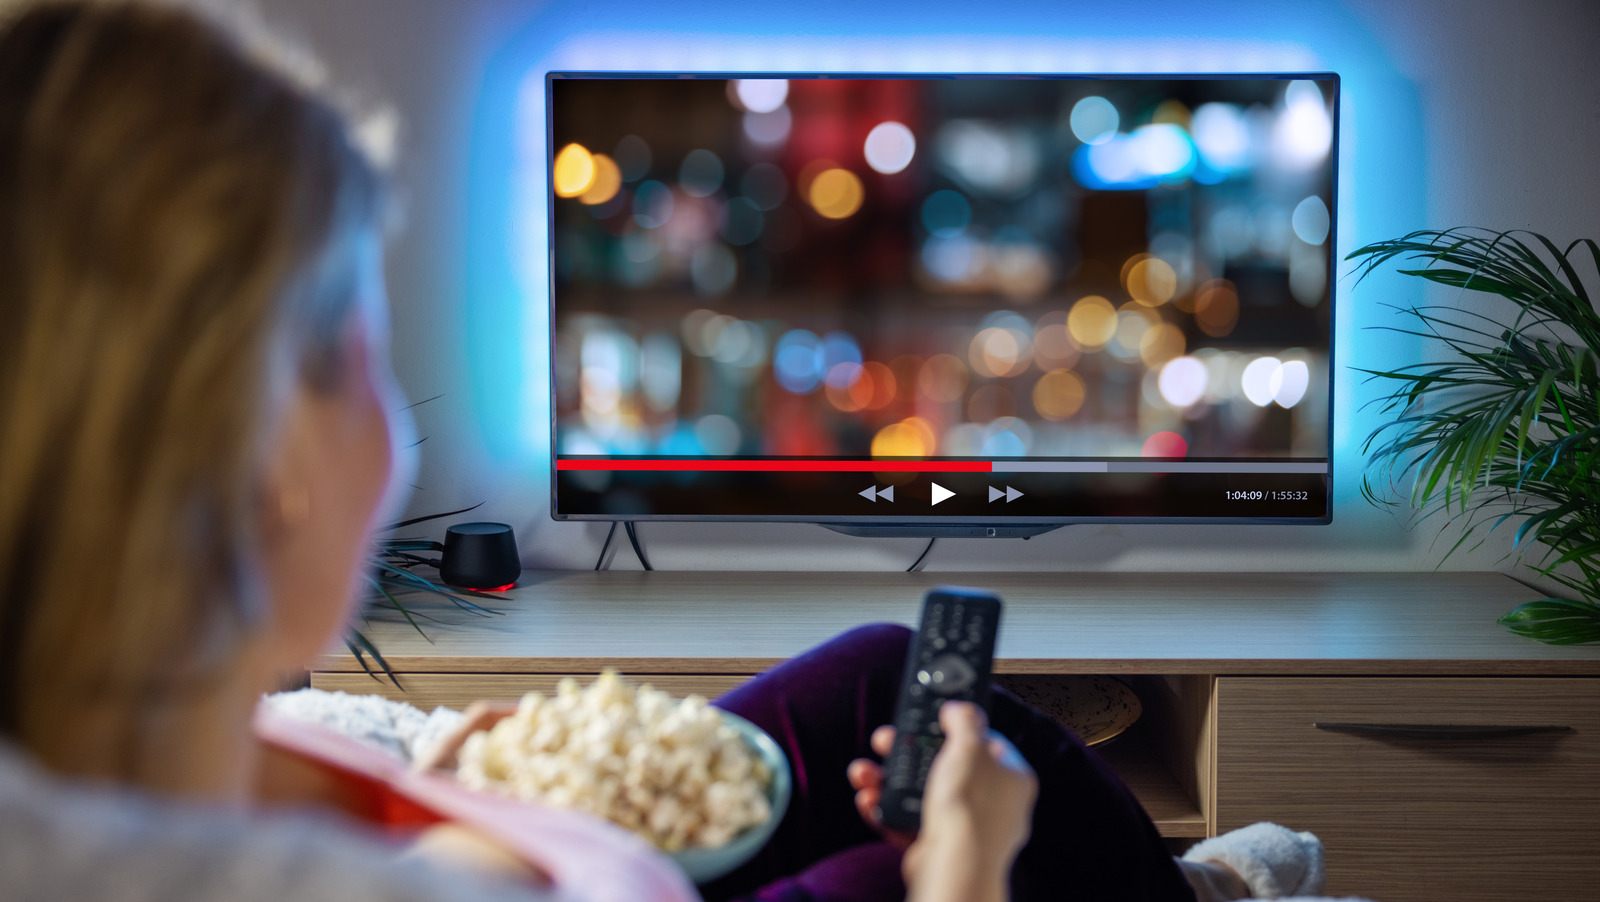 ¿La frecuencia de actualización de un televisor afecta la calidad de la imagen?